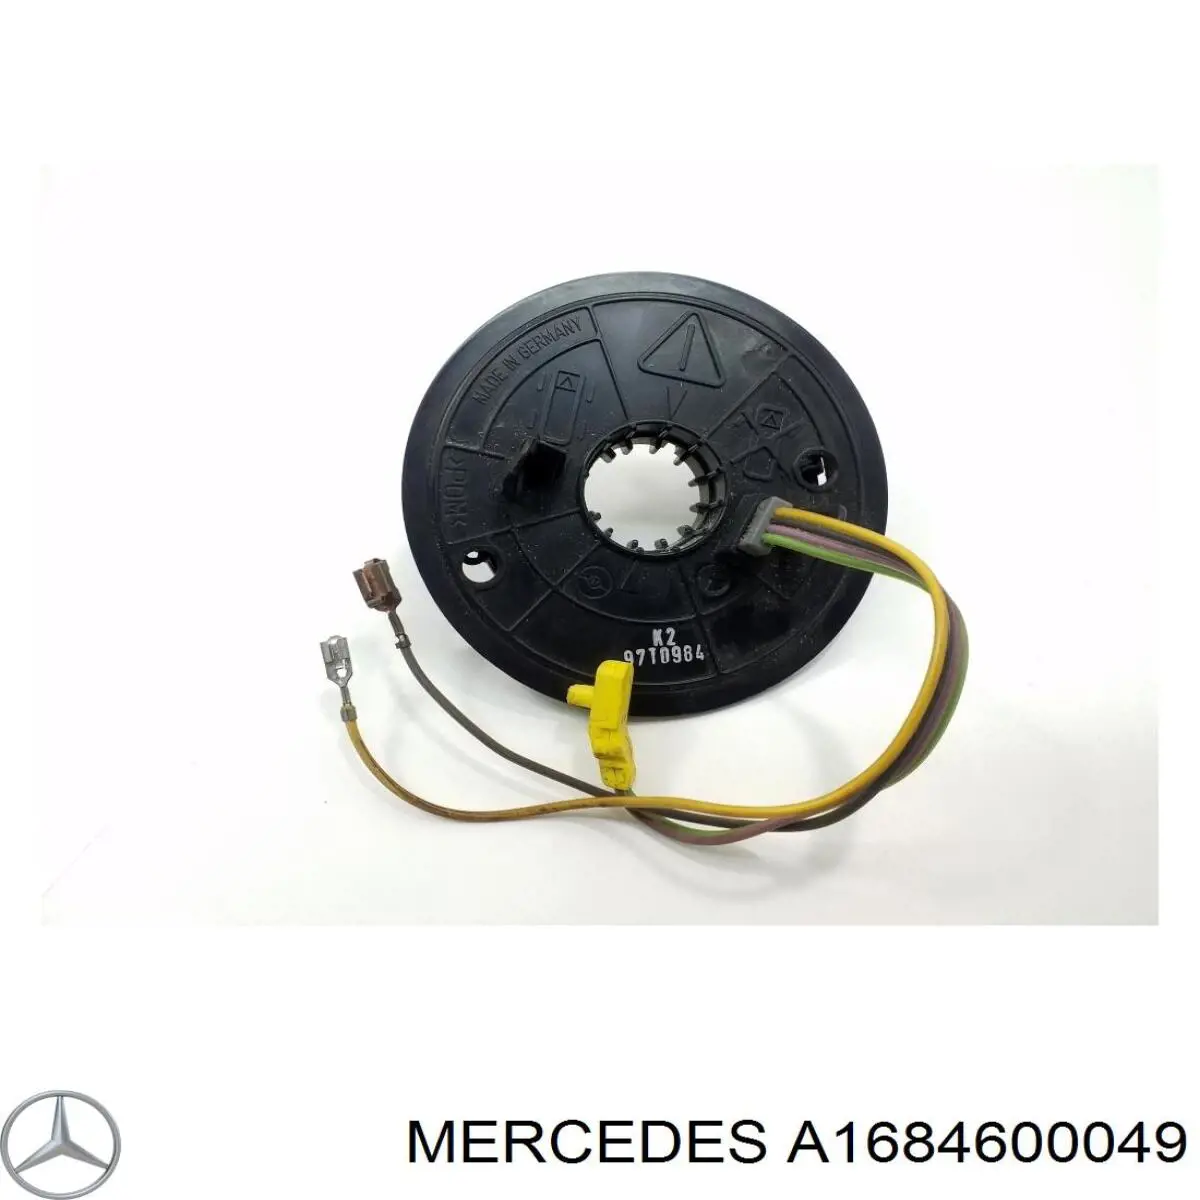 A1684600049 Mercedes anel airbag de contato, cabo plano do volante